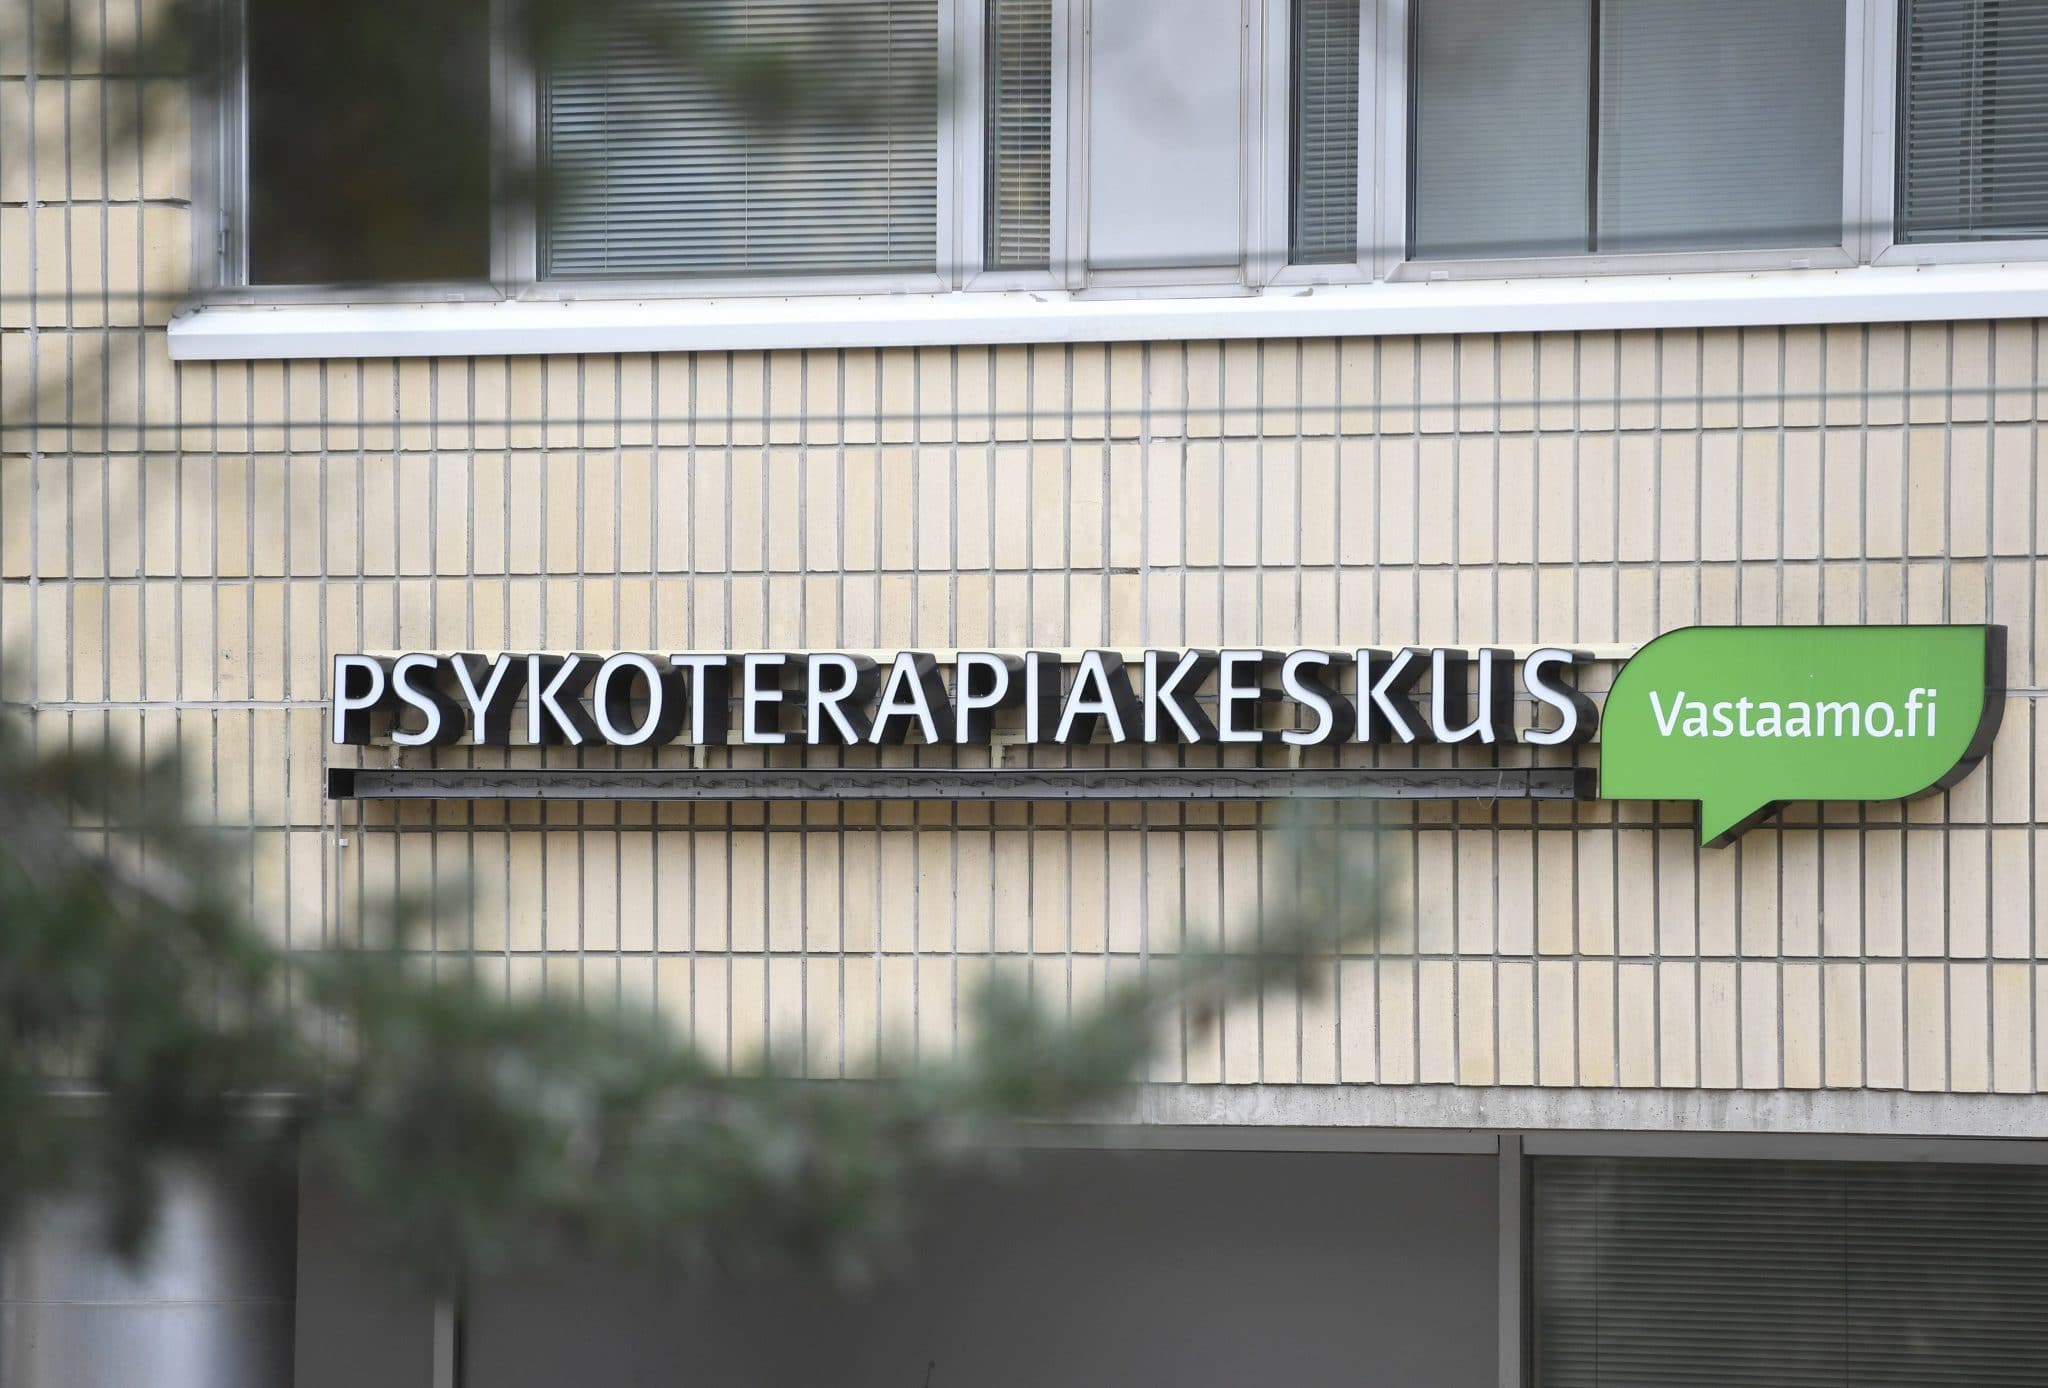 www.verkkouutiset.fi